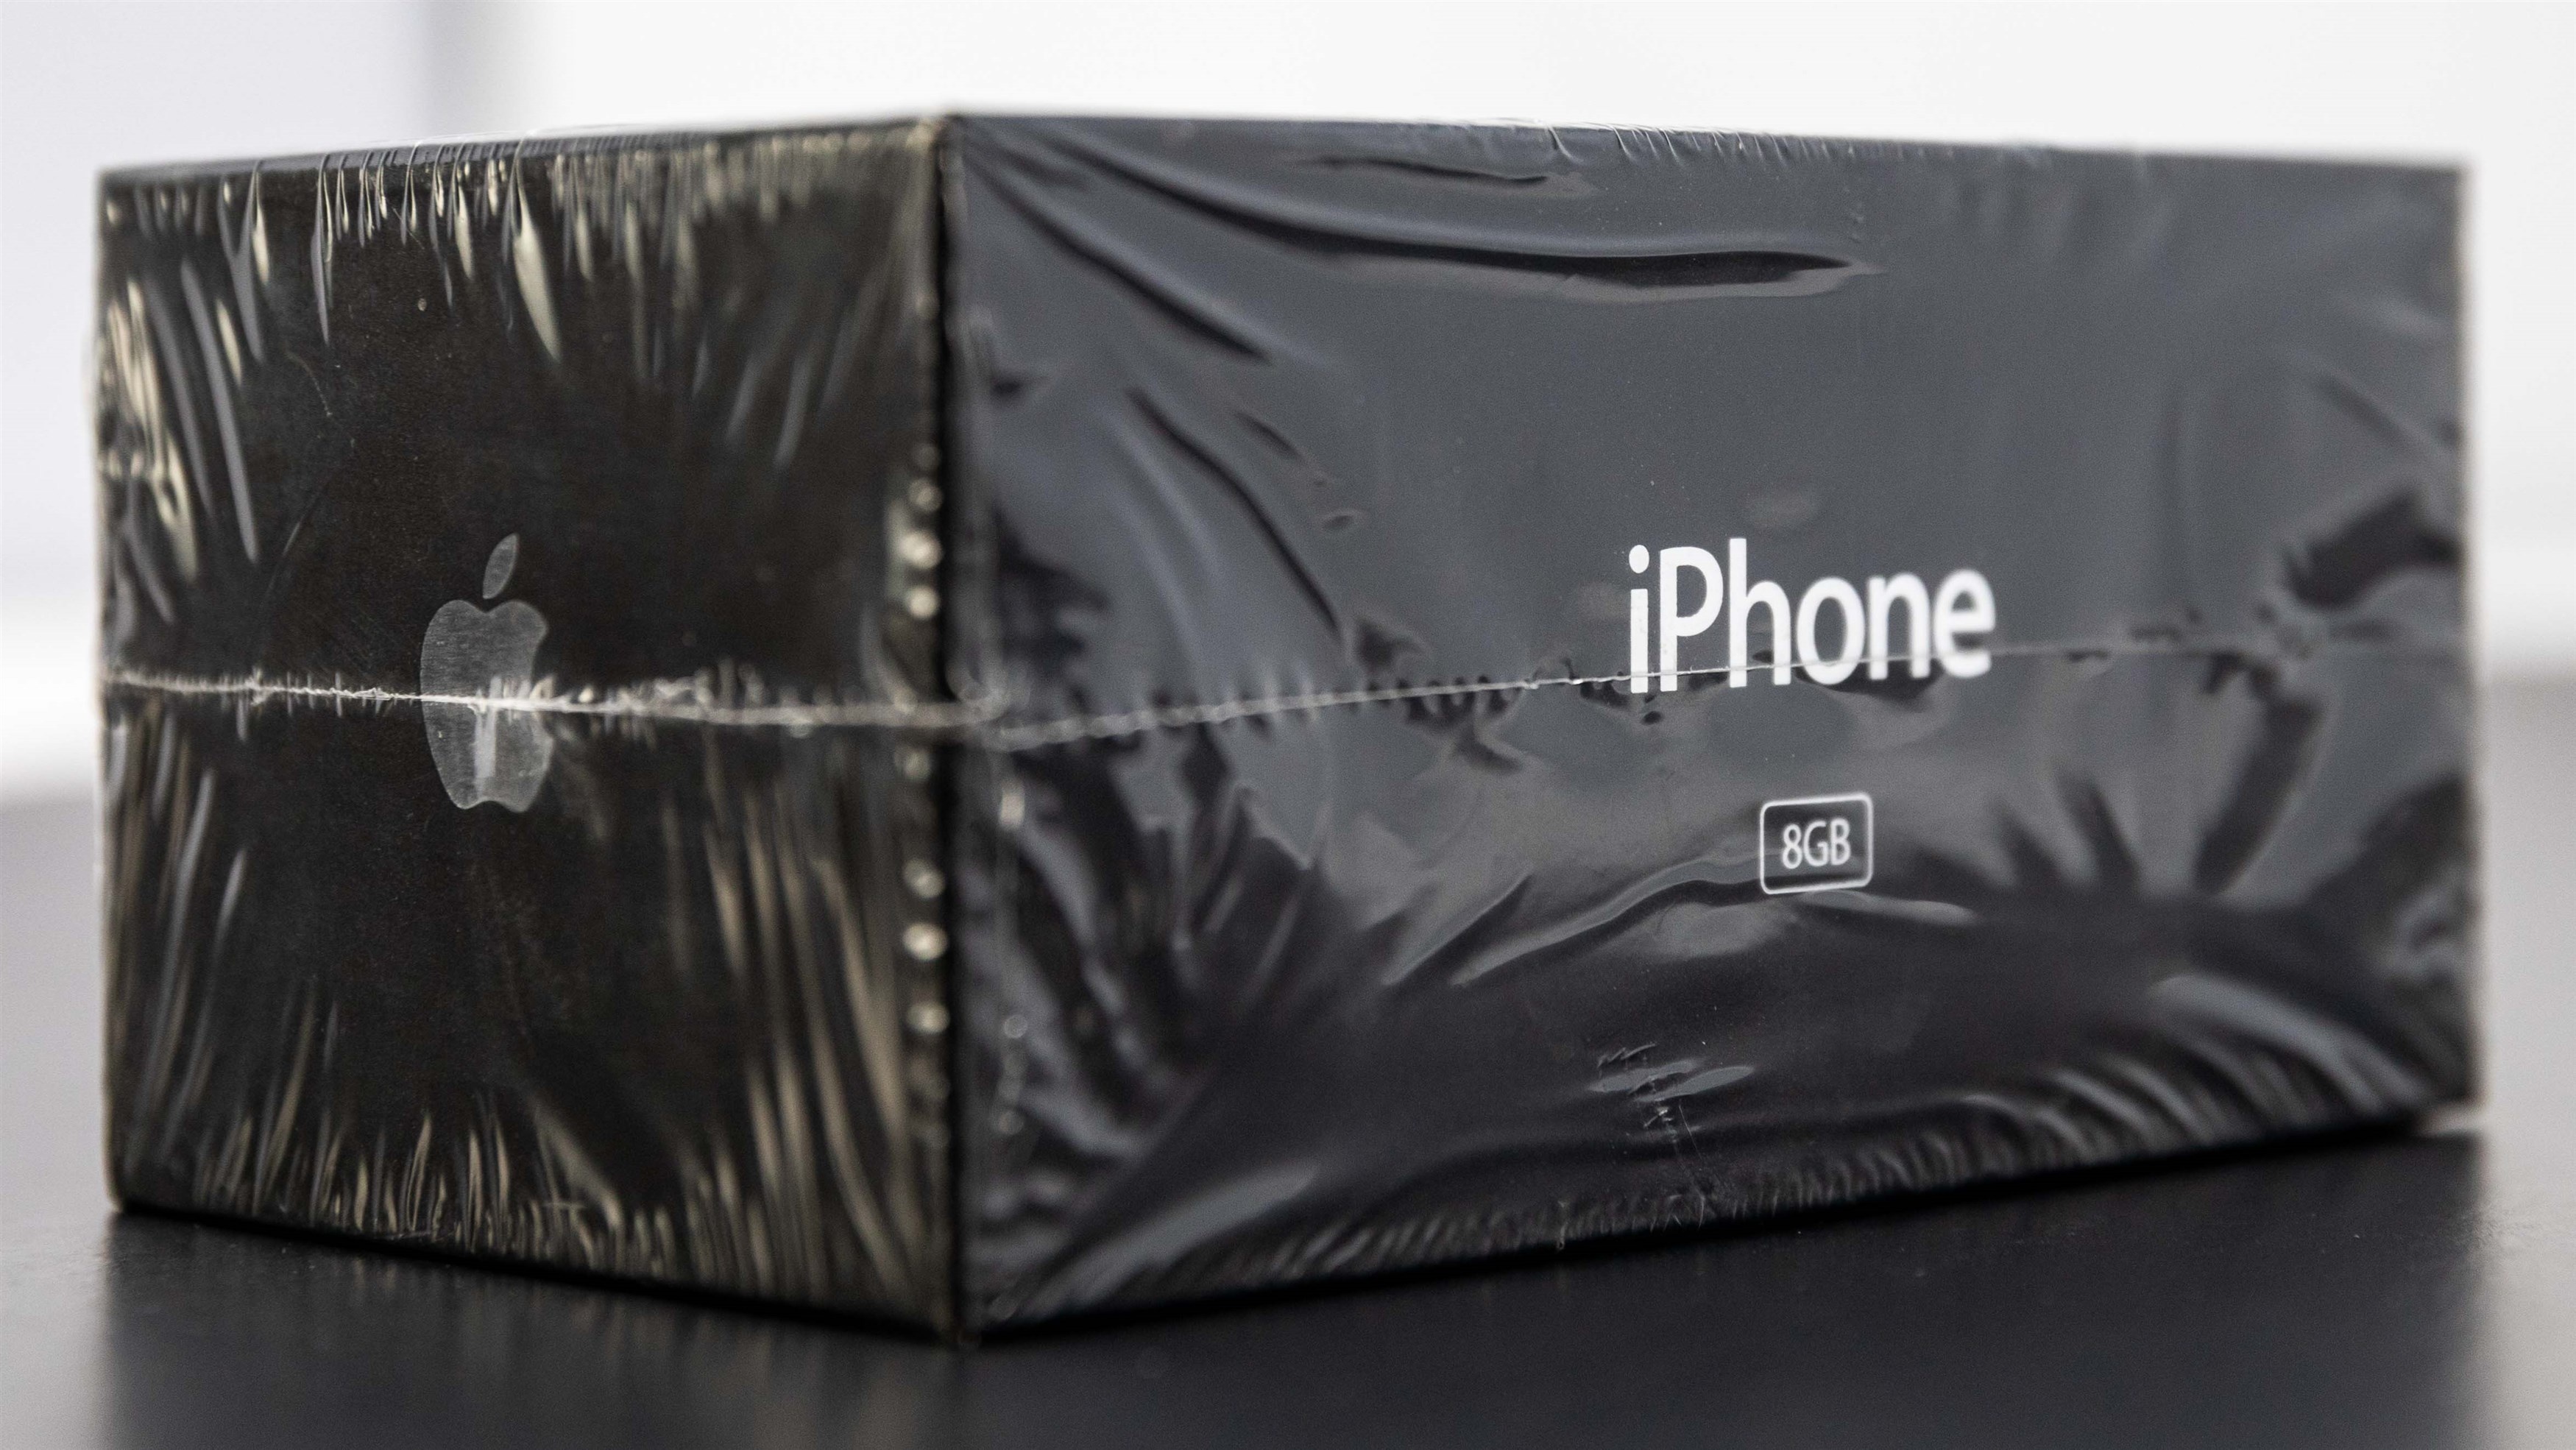 iPhone đời đầu nguyên hộp được rao bán, giá dự kiến 50.000 USD - ảnh 3